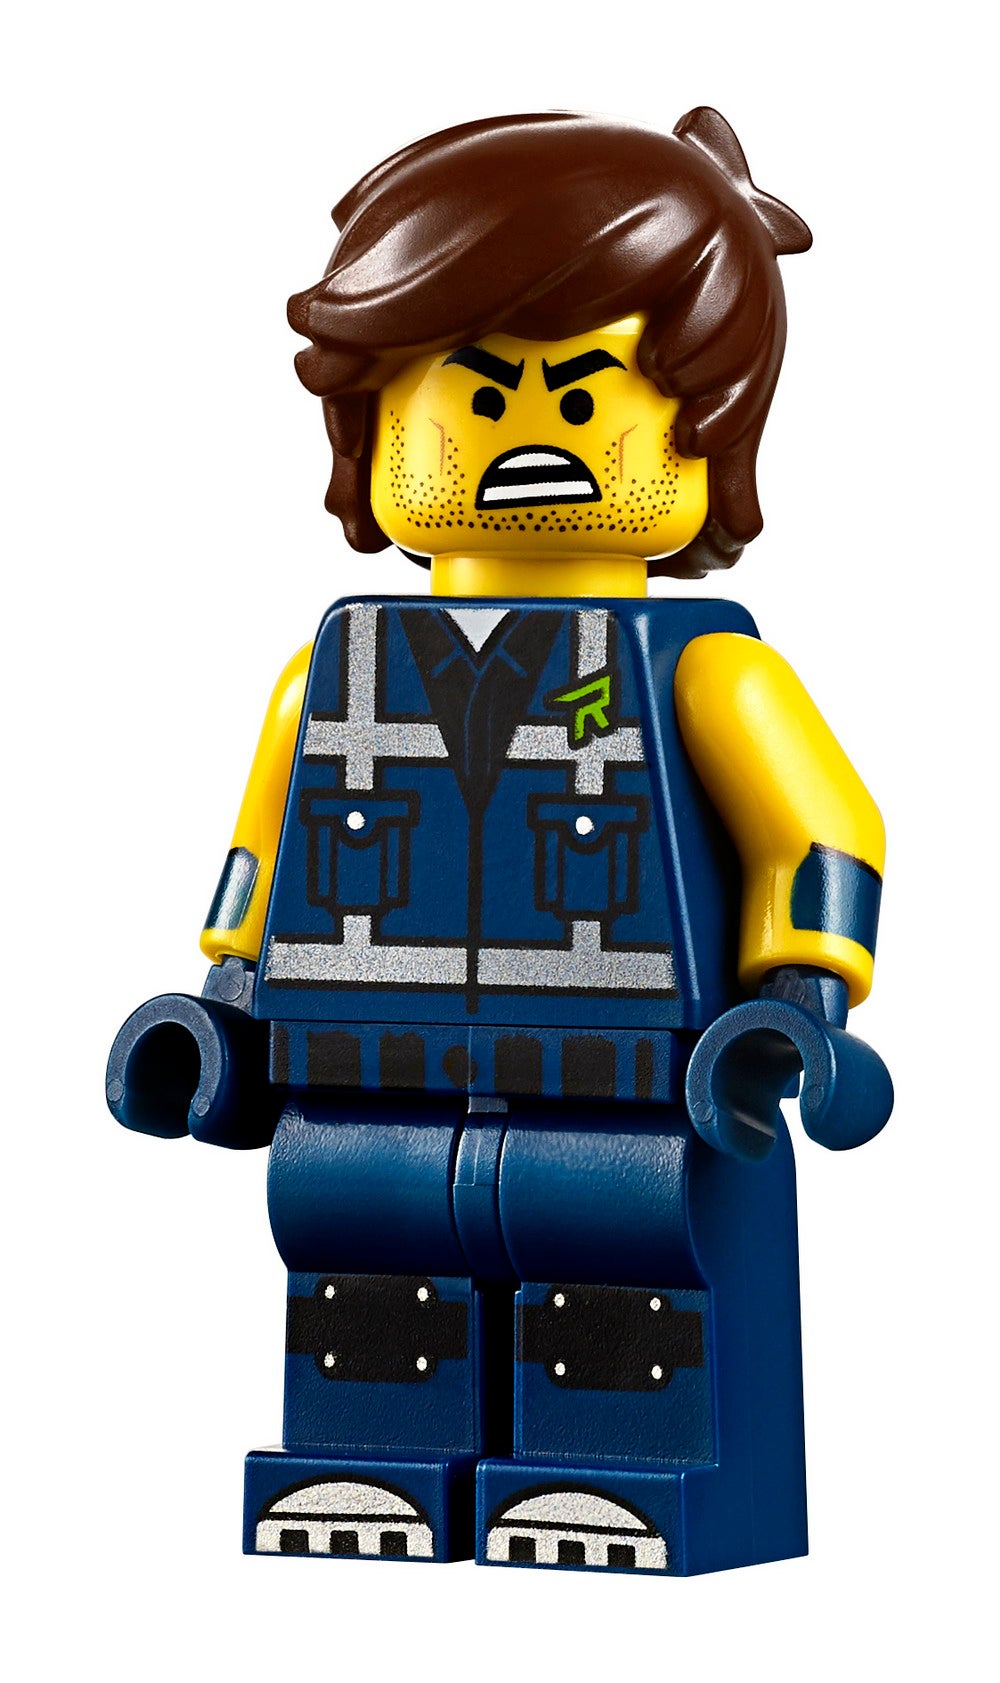 New LEGO Movie 2 Set Revealed - The Rexcelsior! | Figures.com